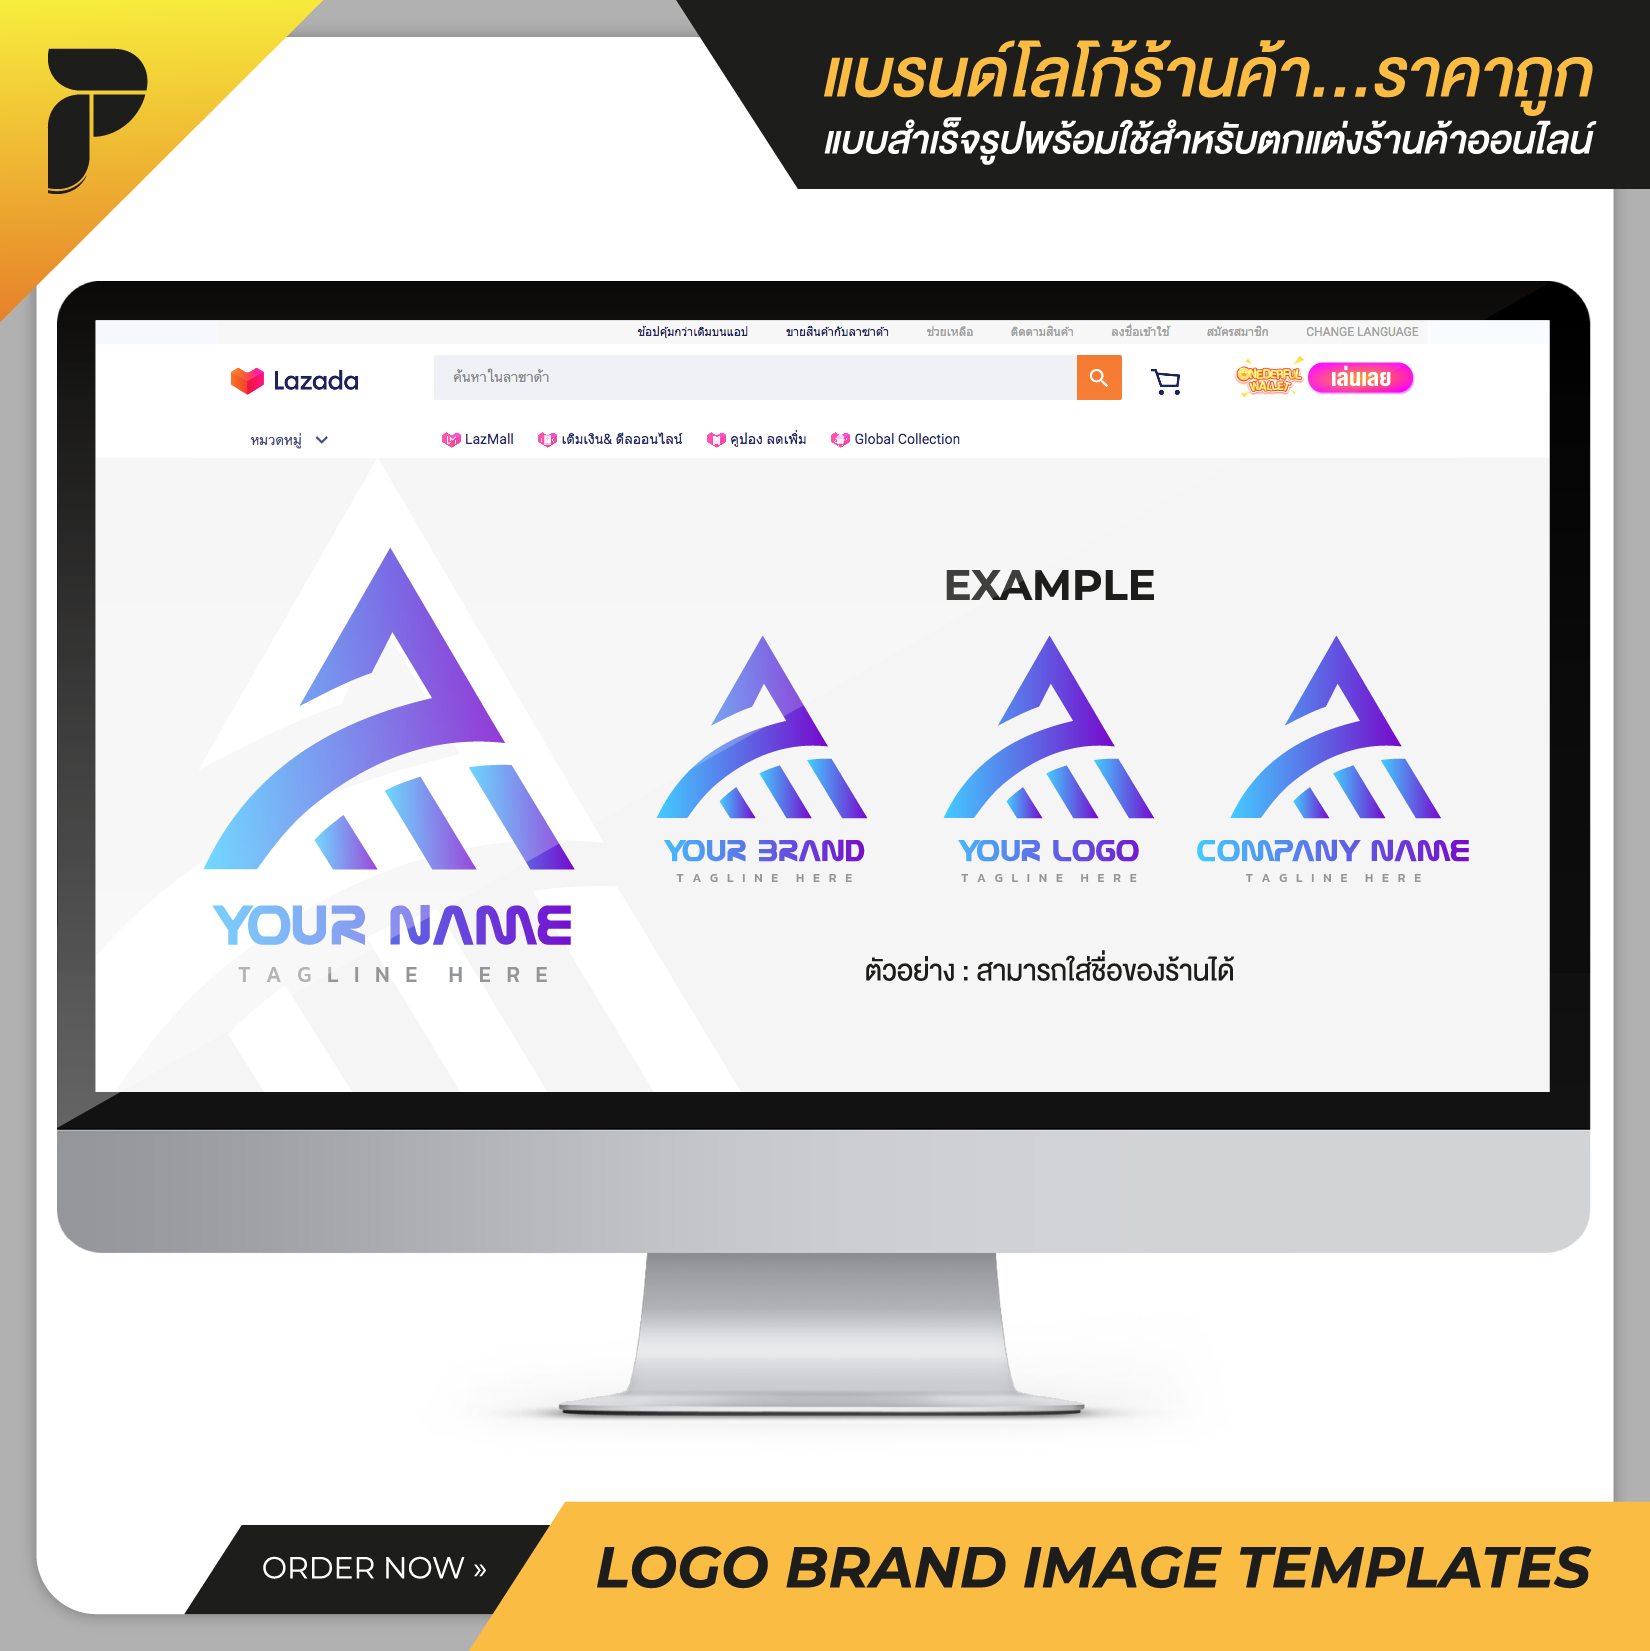 รูปโปรไฟล์ โลโก้ แบรนด์ร้านค้าสำเร็จรูปพร้อมใช้สำหรับตกแต่งร้านค้าออนไลน์ ไลน์ เฟสบุ๊ค เว็บไซต์ Profile Logo Brand Image Template Ready-to-Work by PathGraphic Studio